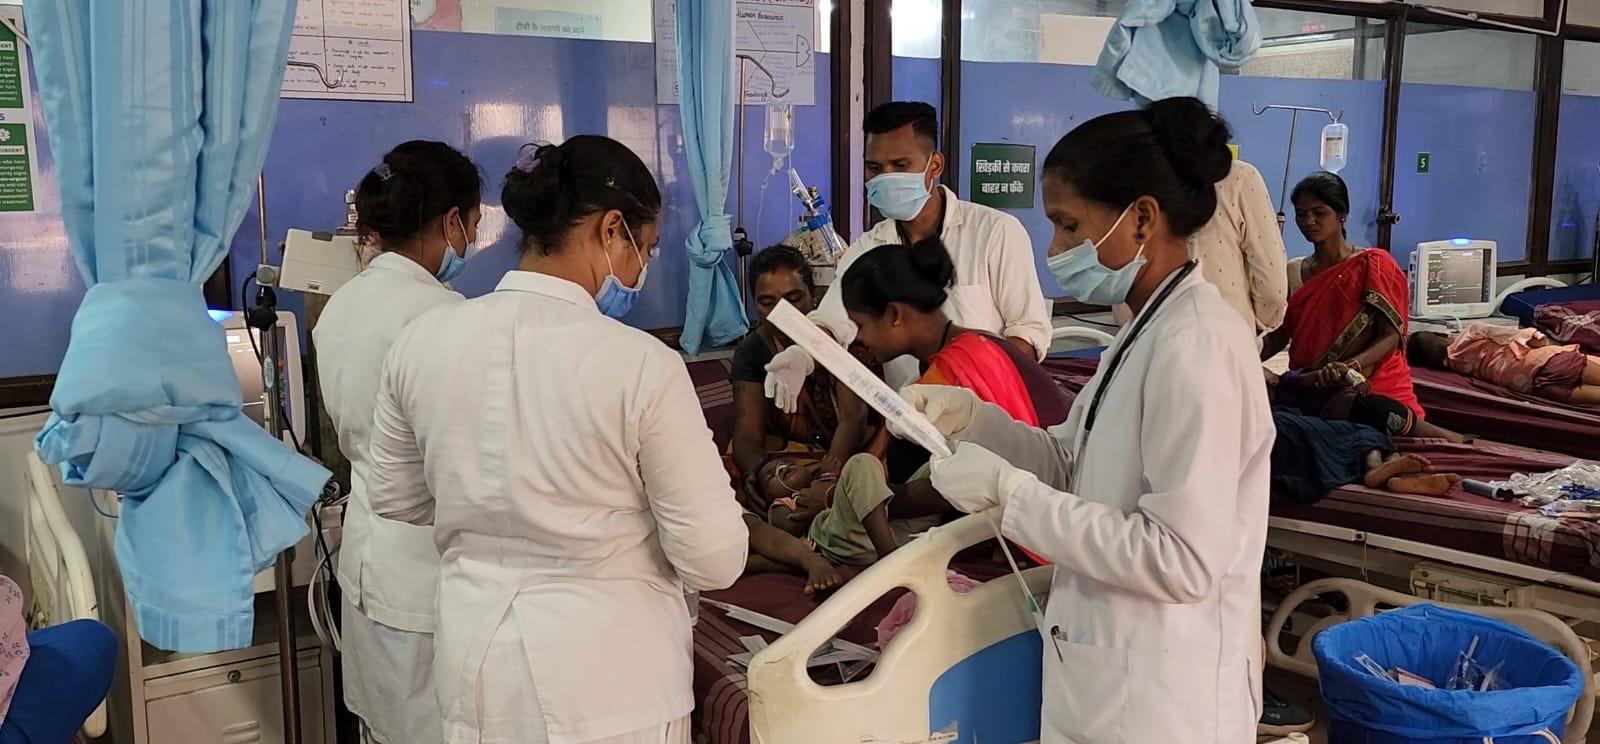 कोण्डागांव: फूड पॉइजनिंग के शिकार हुए एक ही परिवार के सात बच्चे, जिला अस्पताल में उपचार जारी